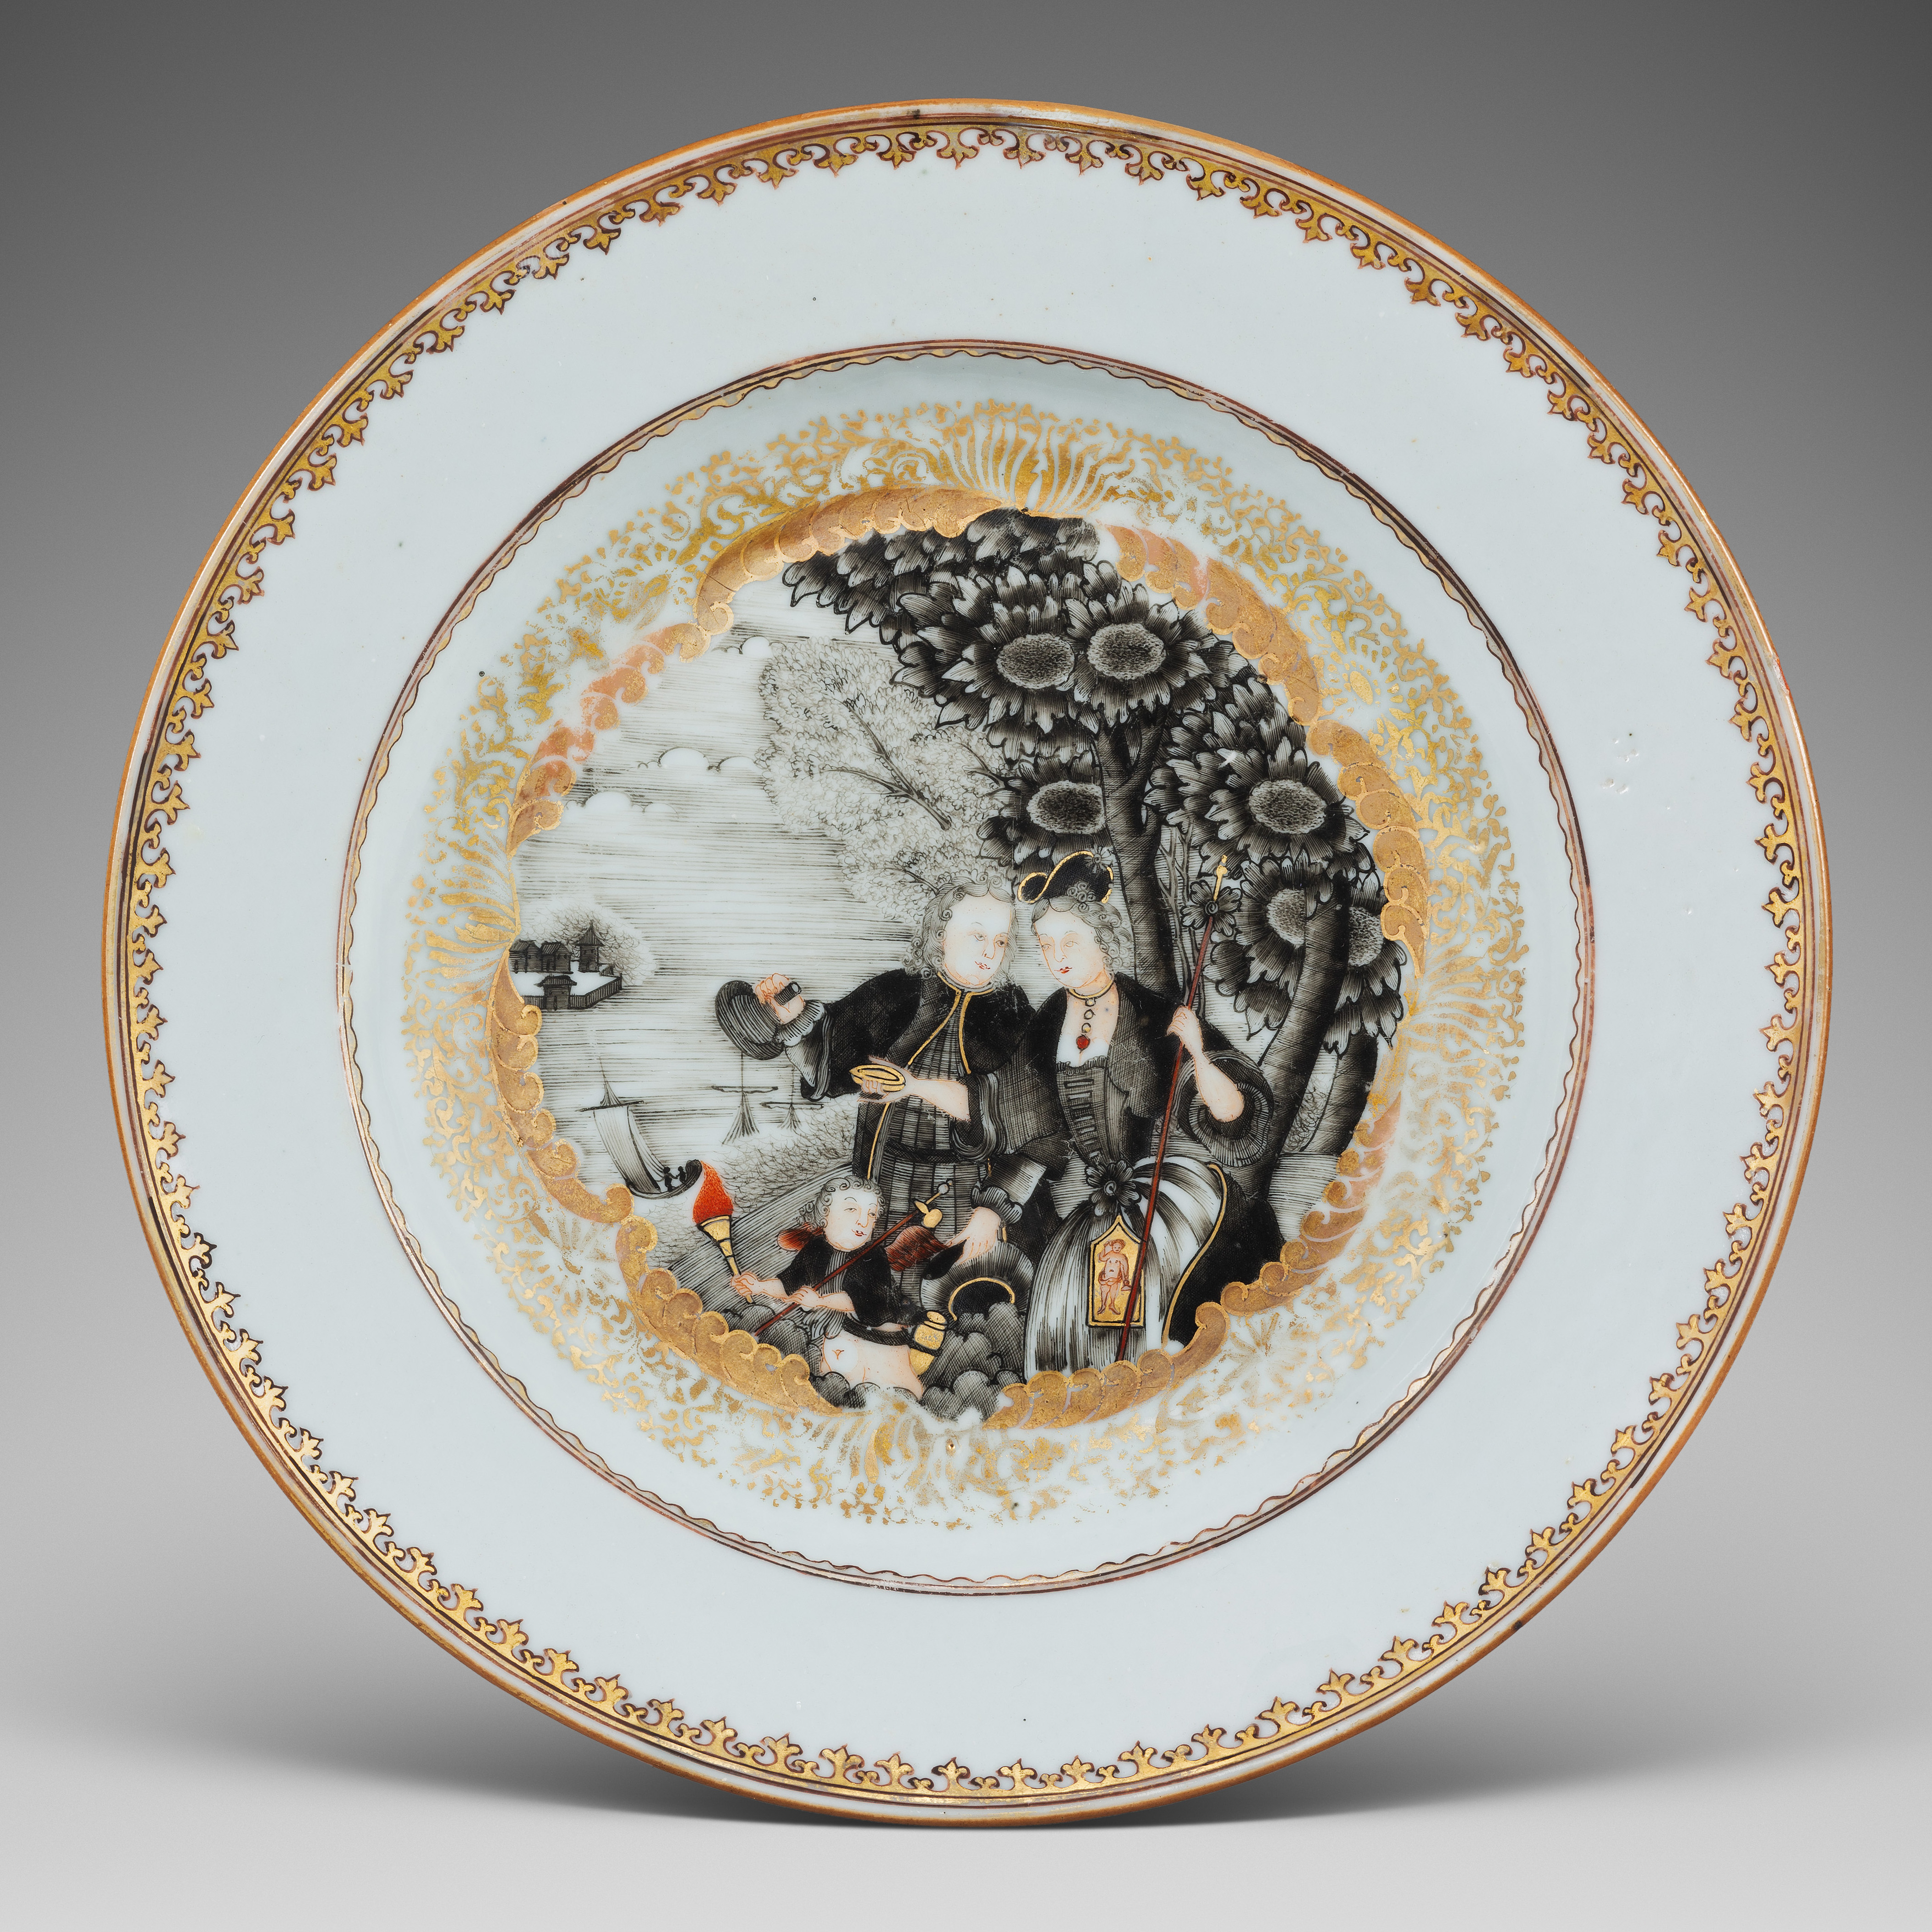 Porcelain Qianlong period (1736-1795), circa 1750, China